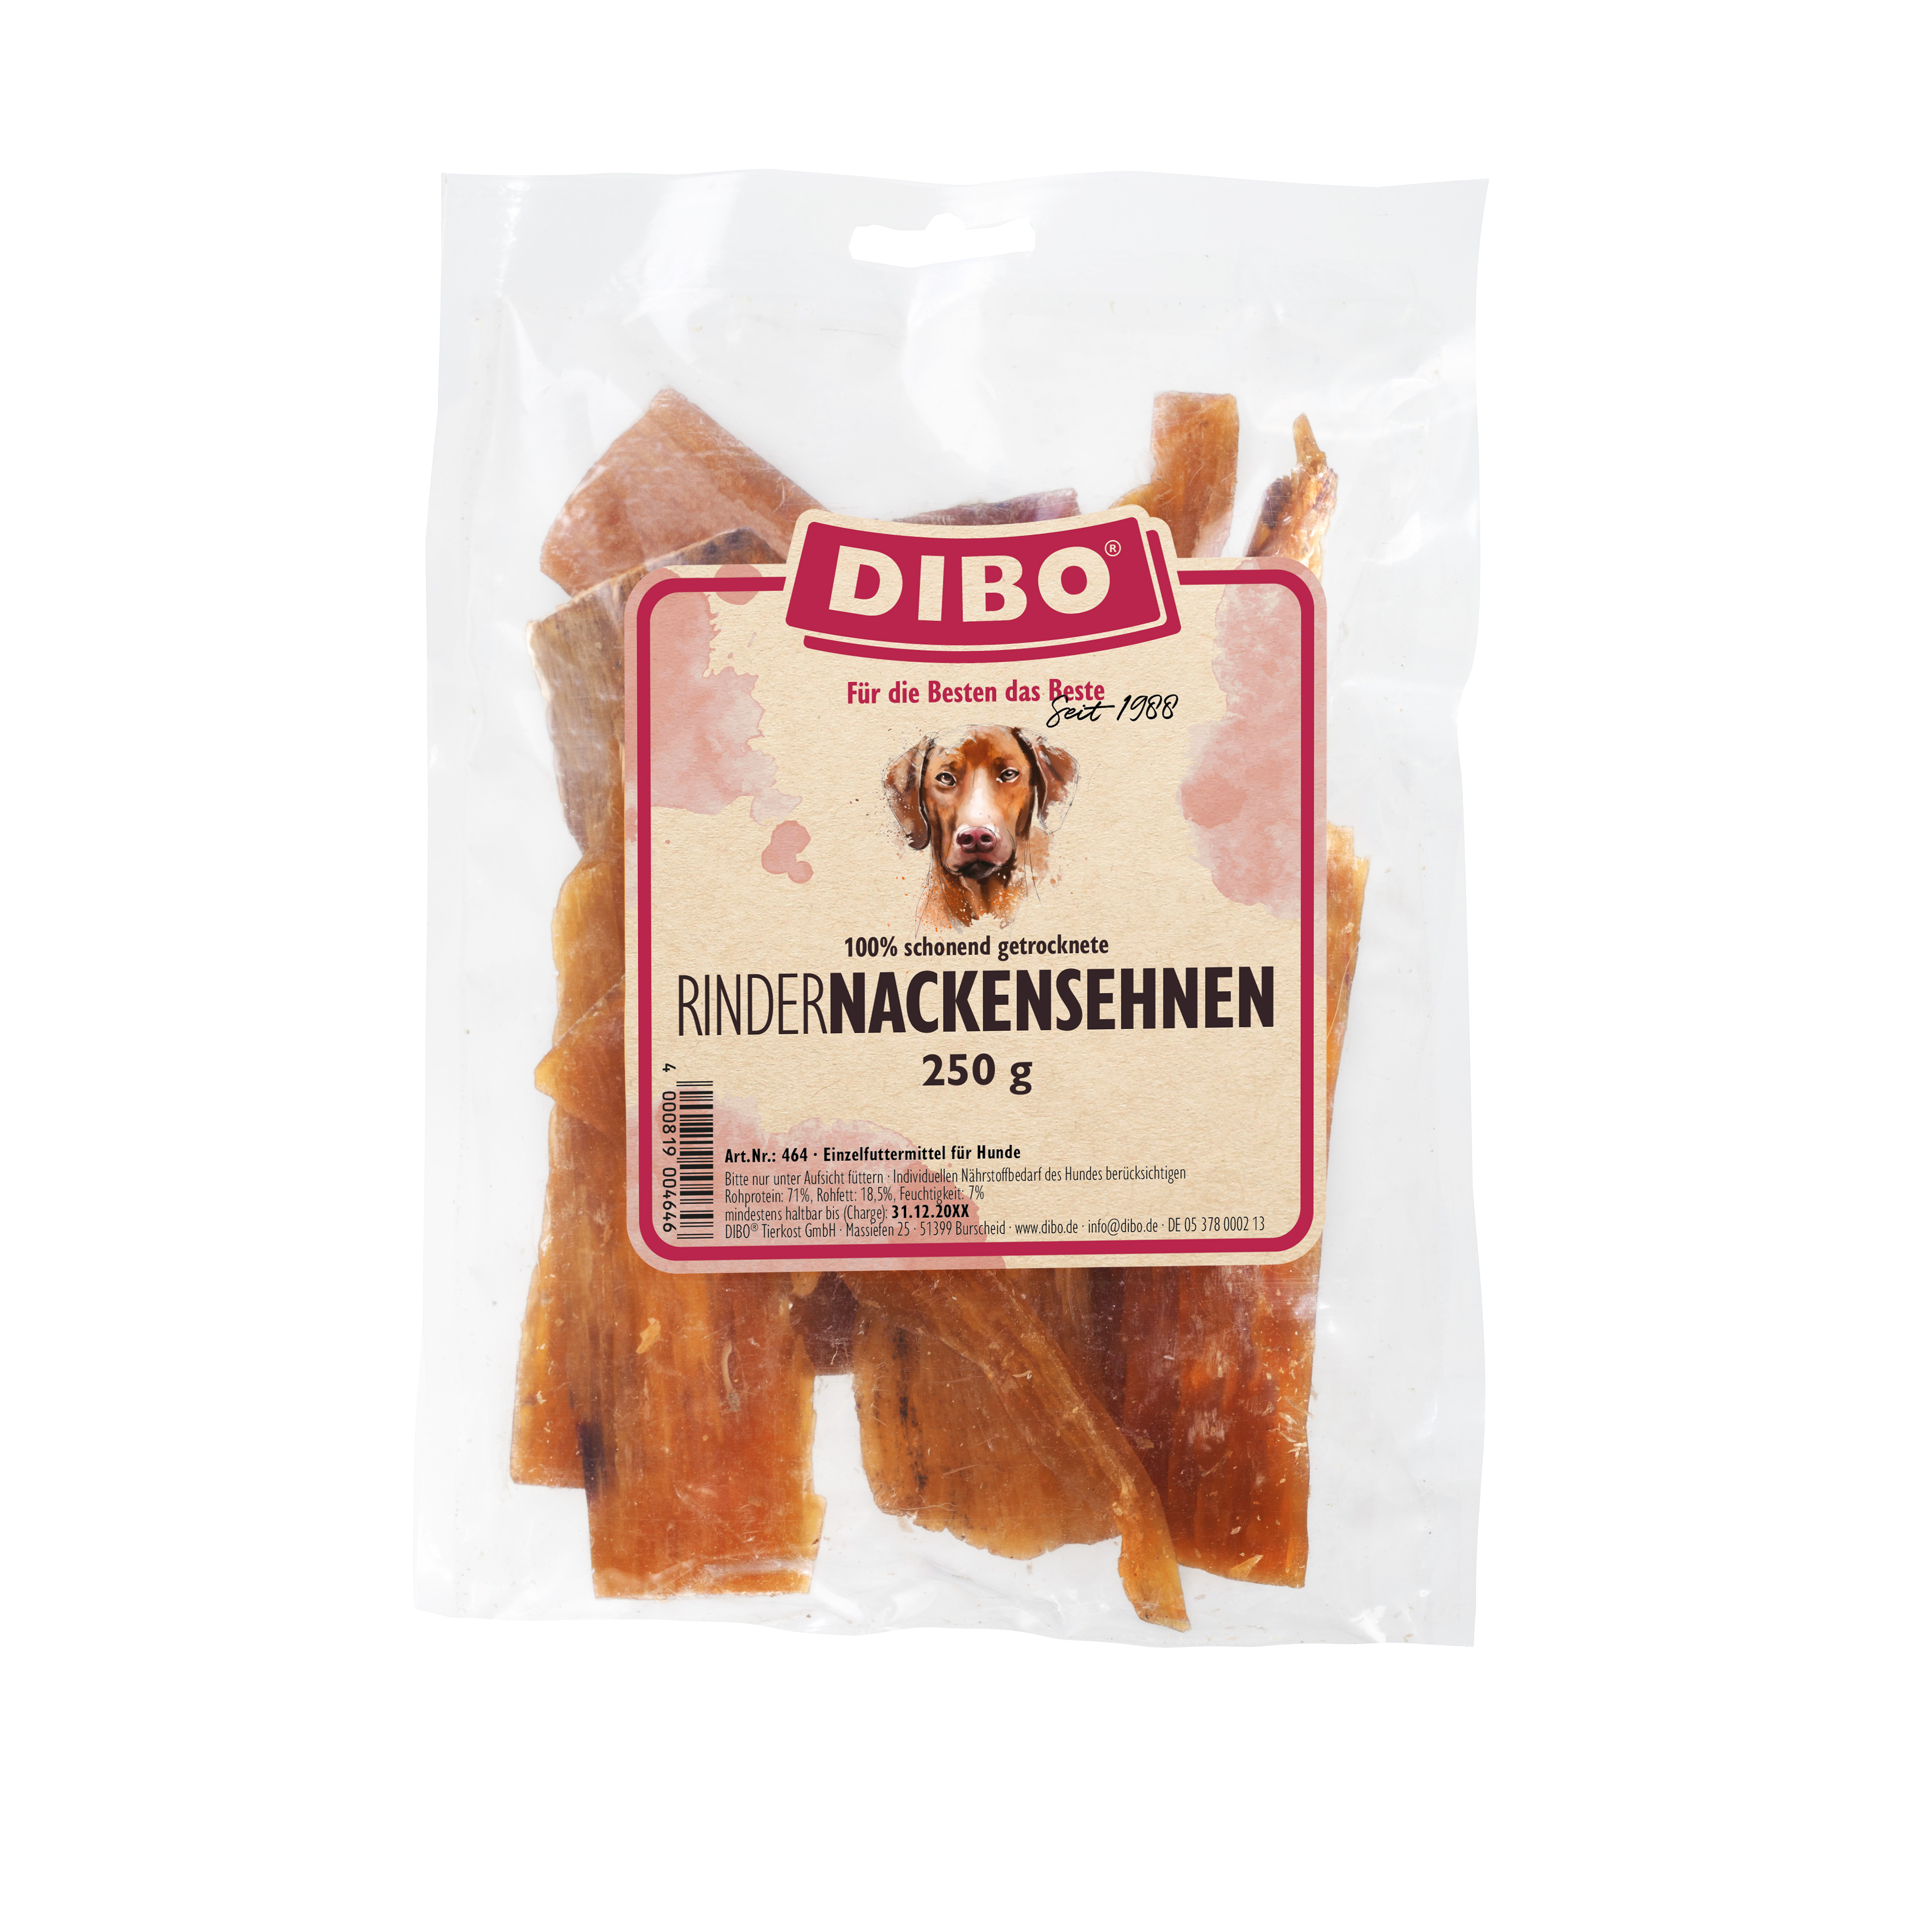 DIBO Rinder-Nackensehnen, 250g-Beutel